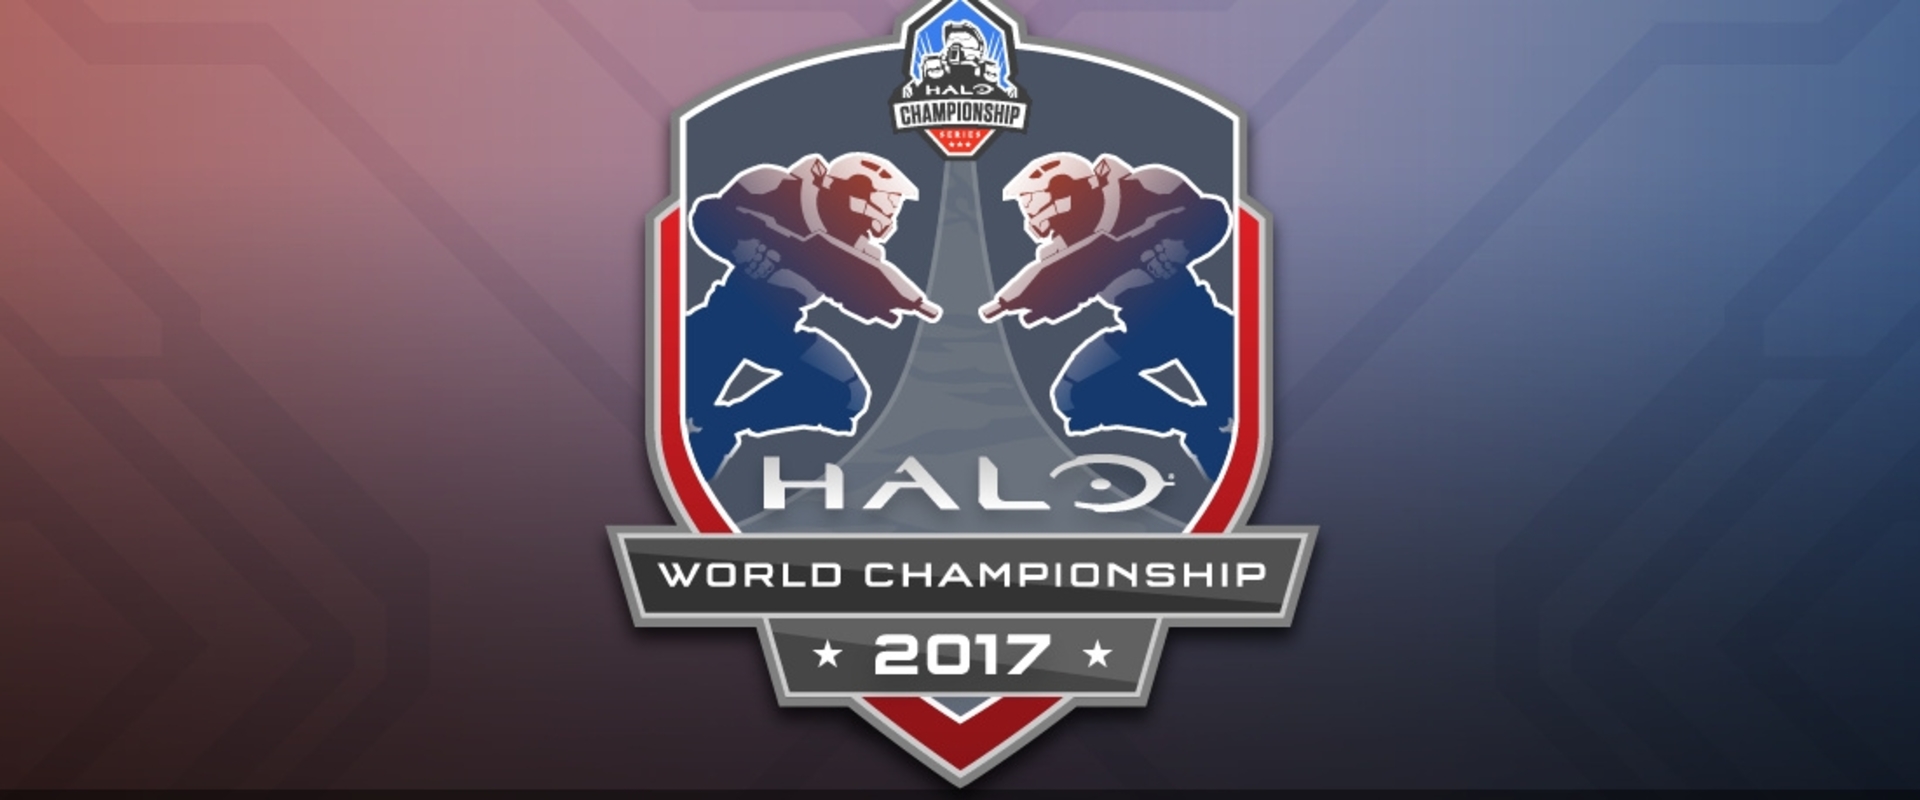 Az út kezdete: indulnak a selejtezők a Halo világbajnokságra